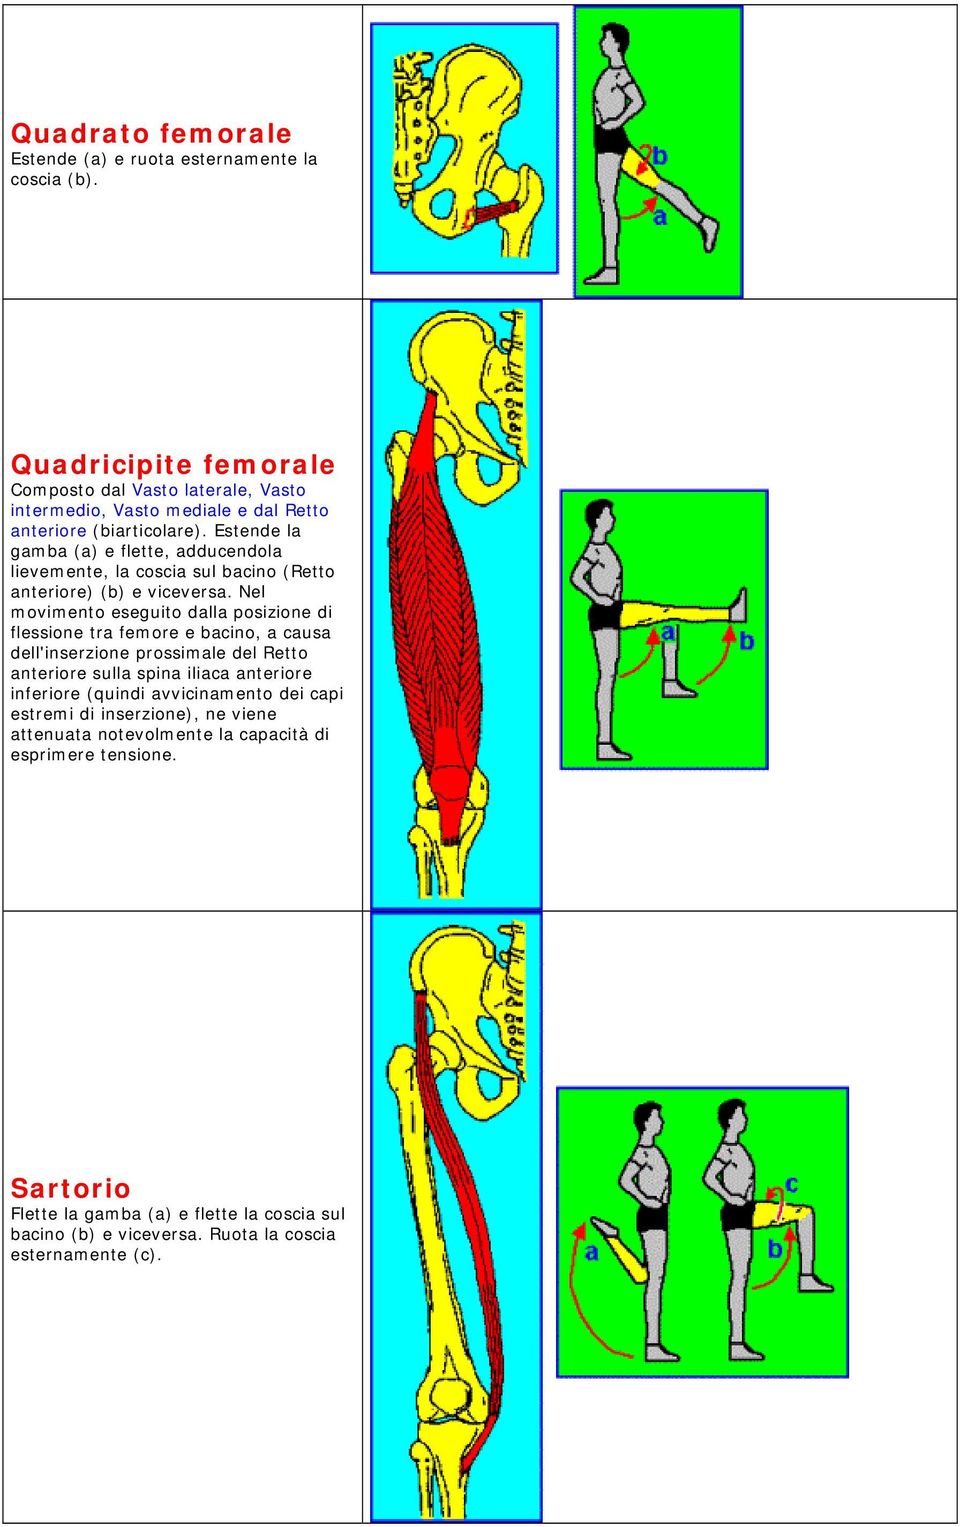 Estende la gamba (a) e flette, adducendola lievemente, la coscia sul bacino (Retto anteriore) (b) e viceversa.